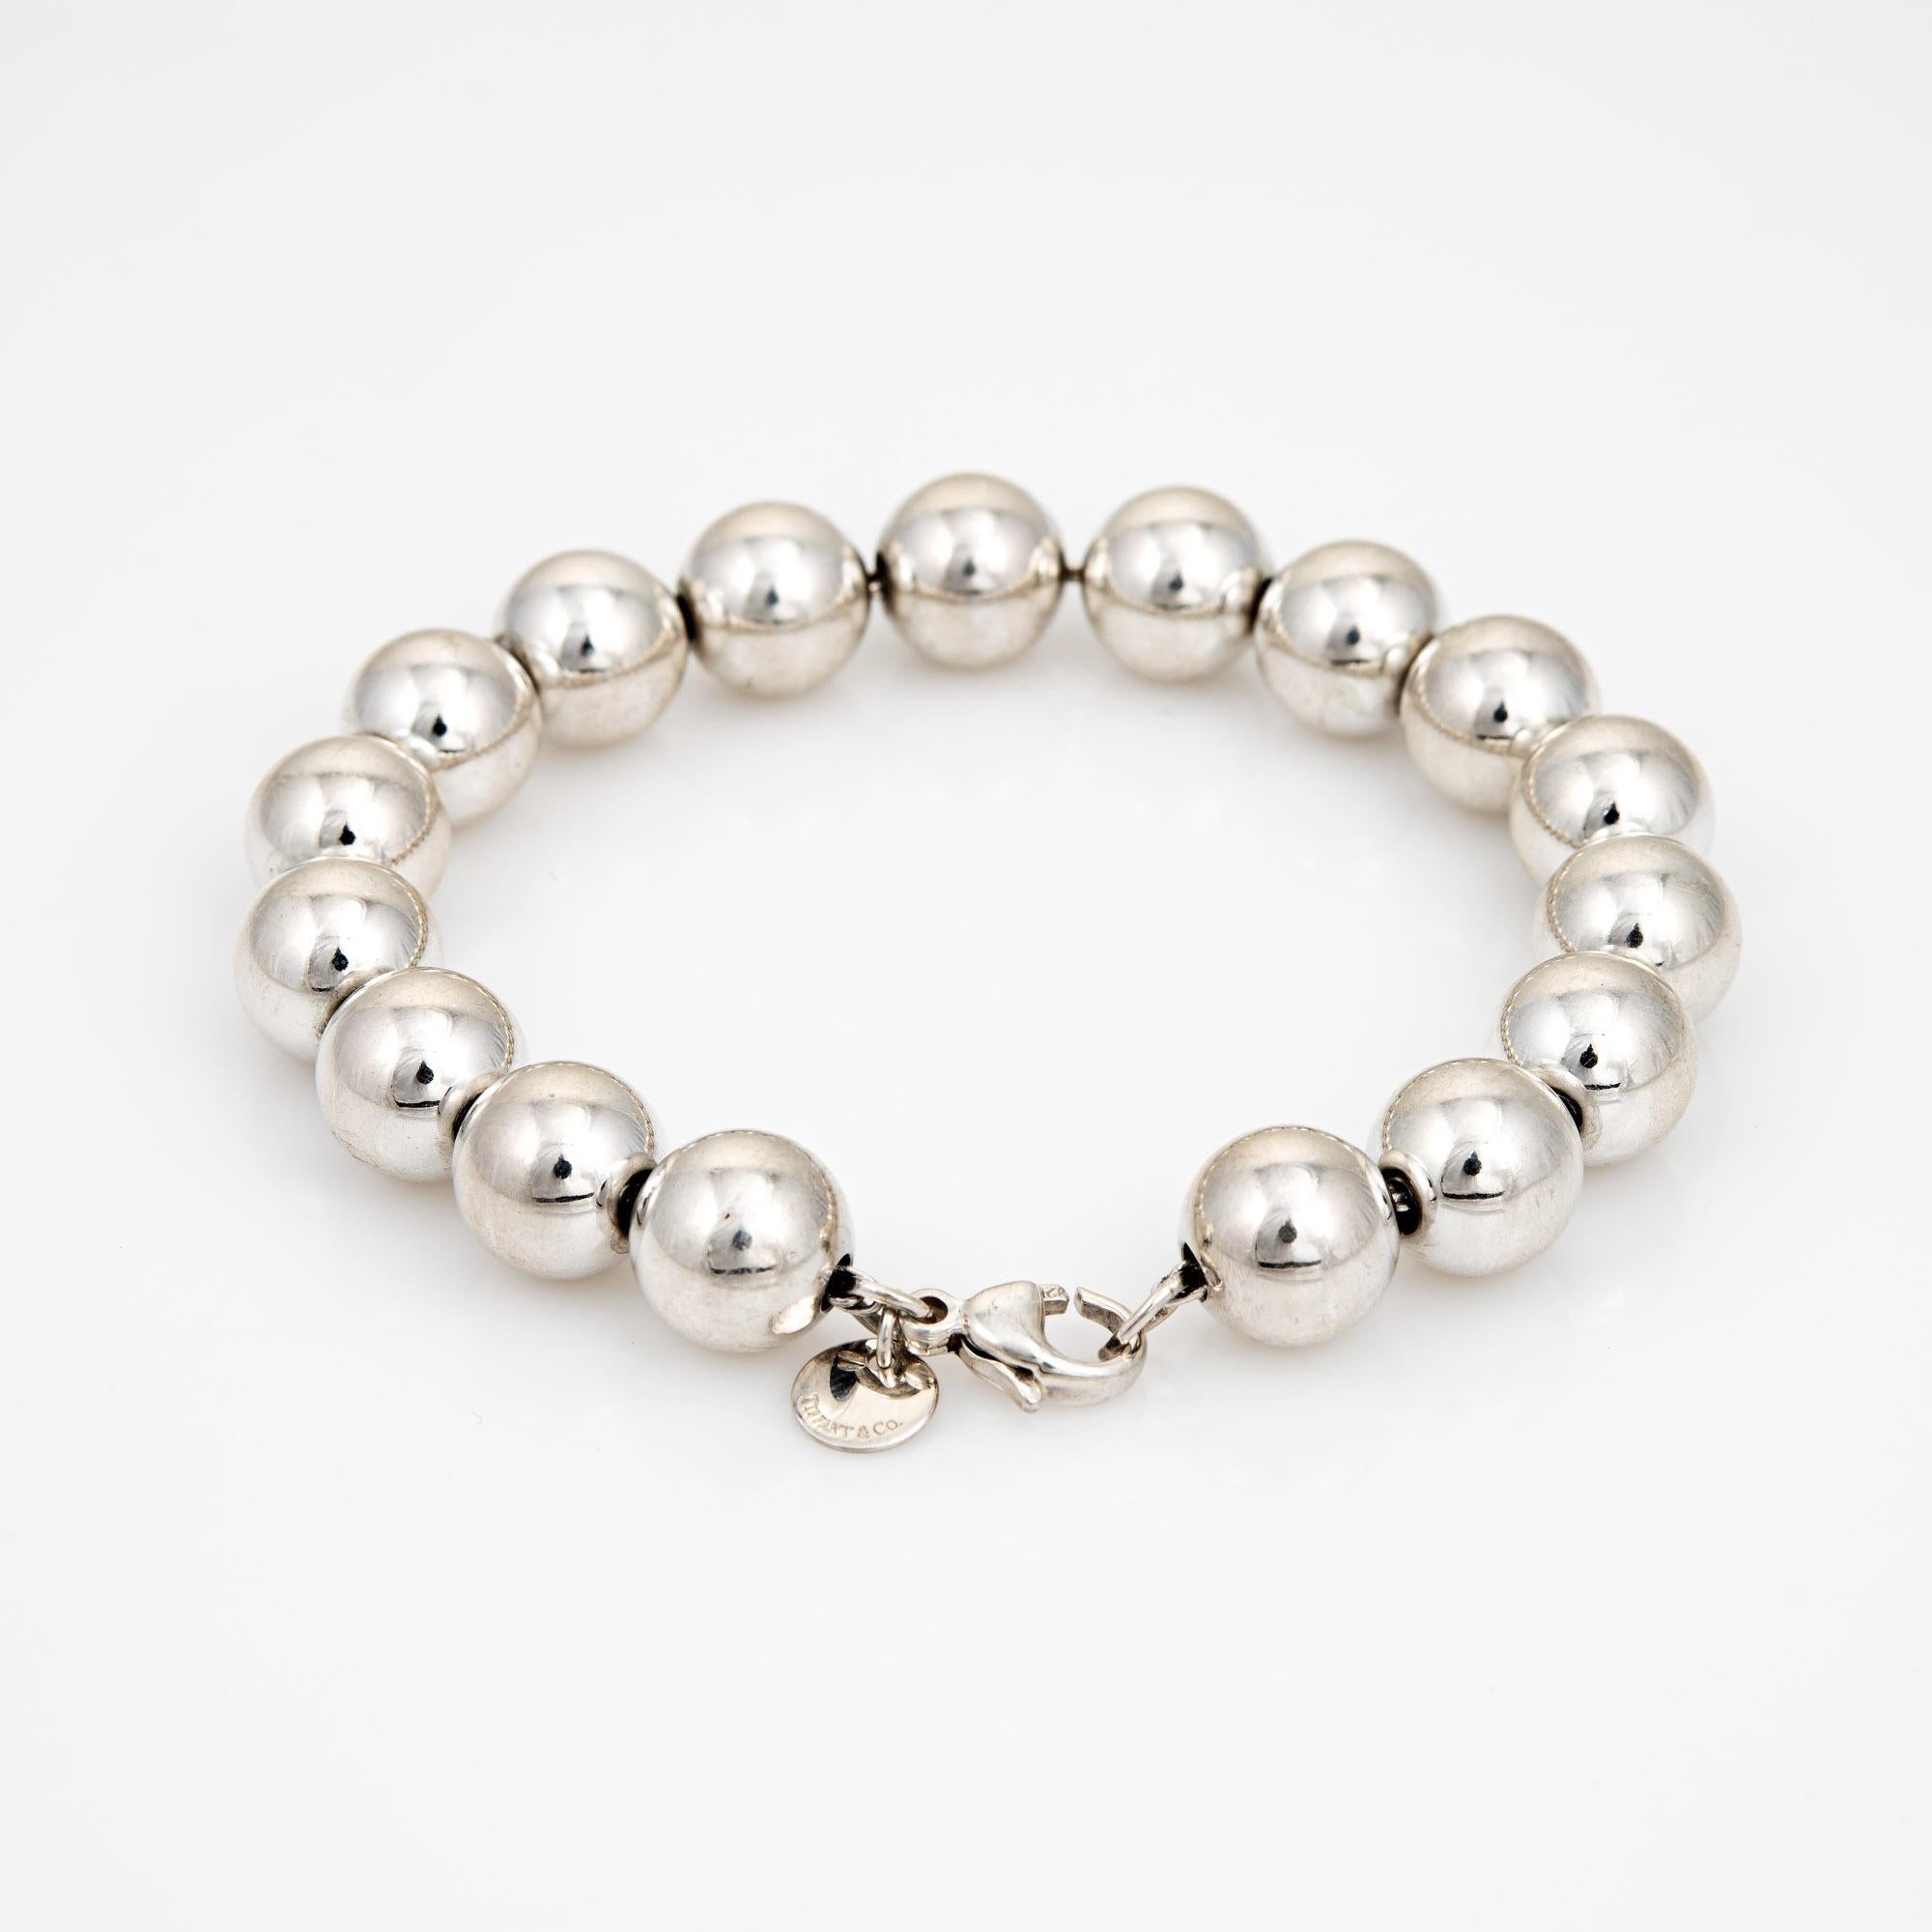 Élégant bracelet d'occasion en argent 925 de Tiffany & Co.  

Le bracelet comporte des perles en argent de taille uniforme (10 mm). Il est idéal pour être porté seul ou associé à des bijoux de toutes les époques.

Le bracelet est en très bon état et